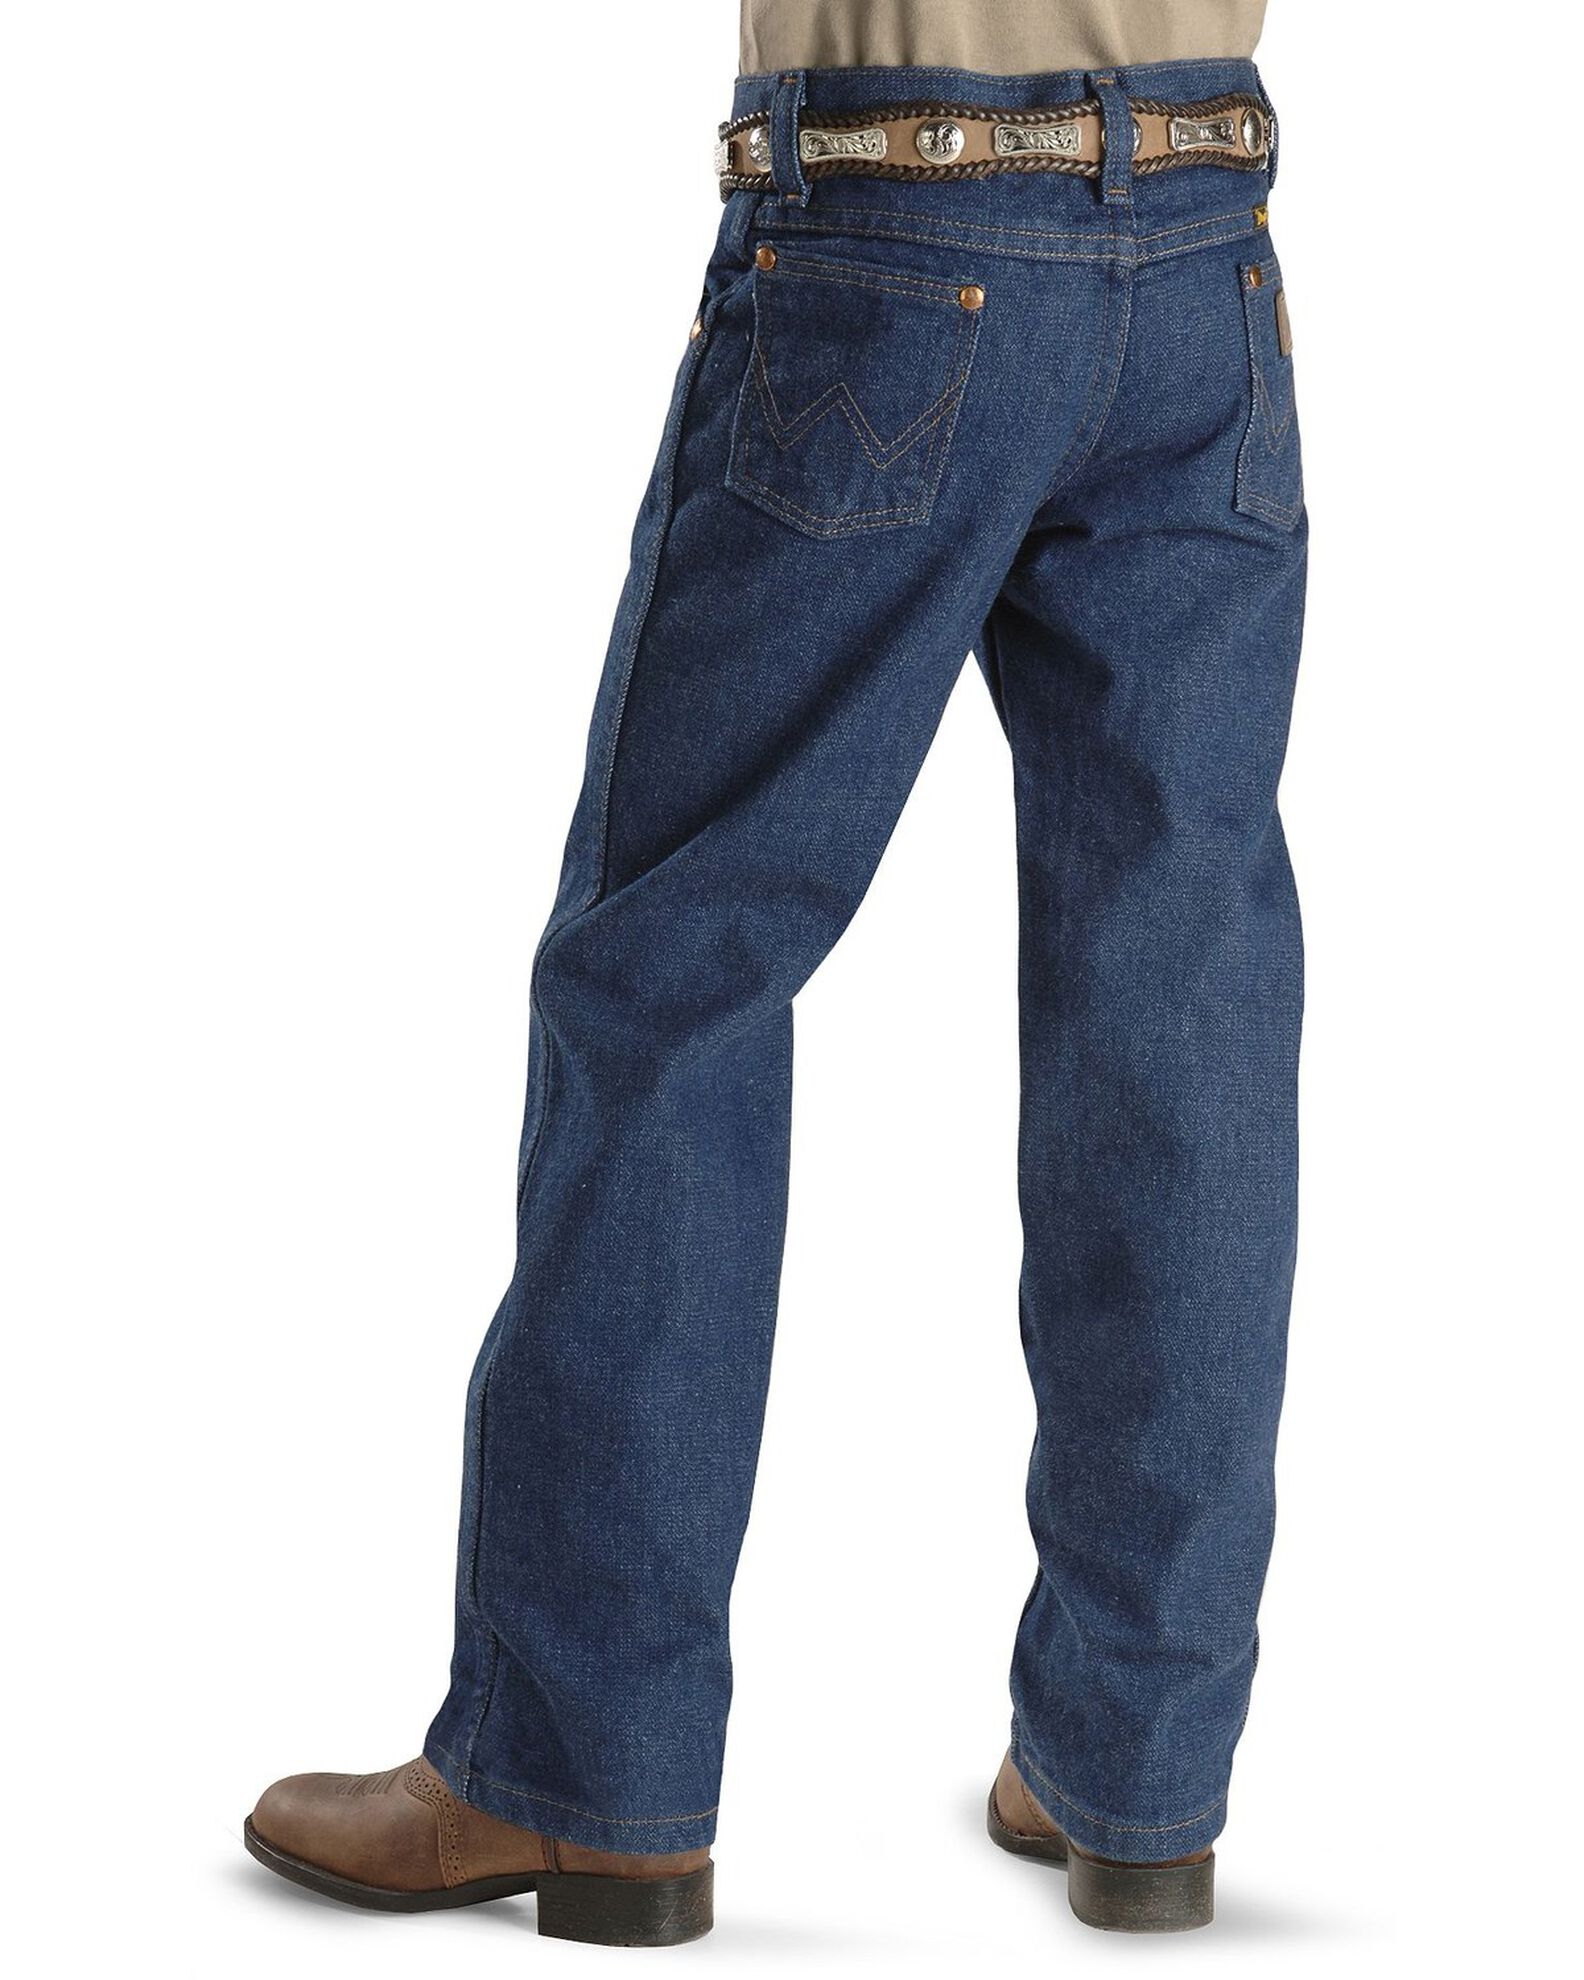 Wrangler Boys' ProRodeo Jeans Size 1-7 | Boot Barn